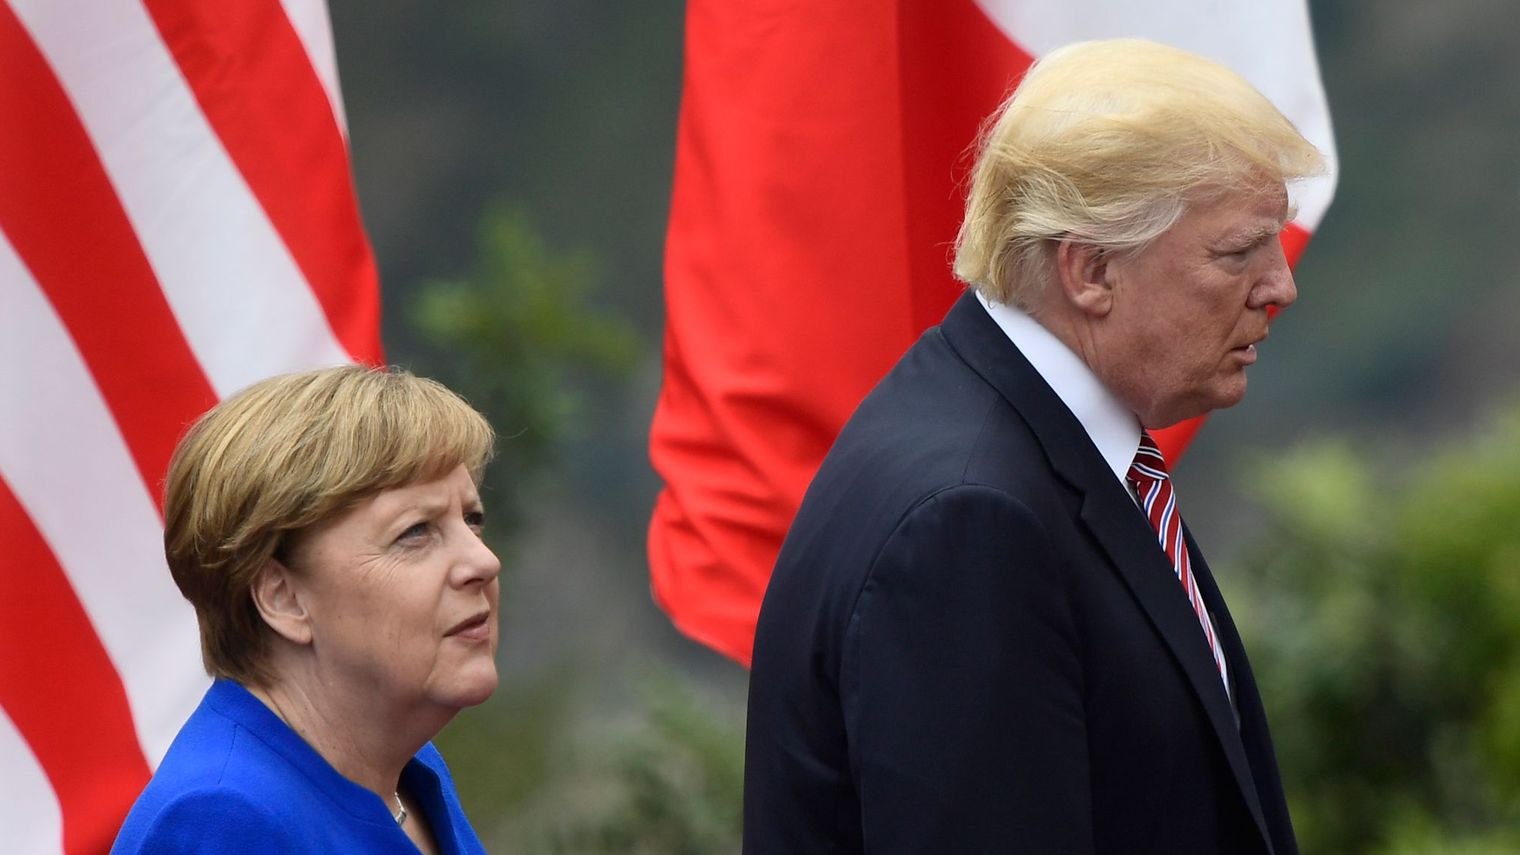 Le président américain très critique envers l’Allemagne